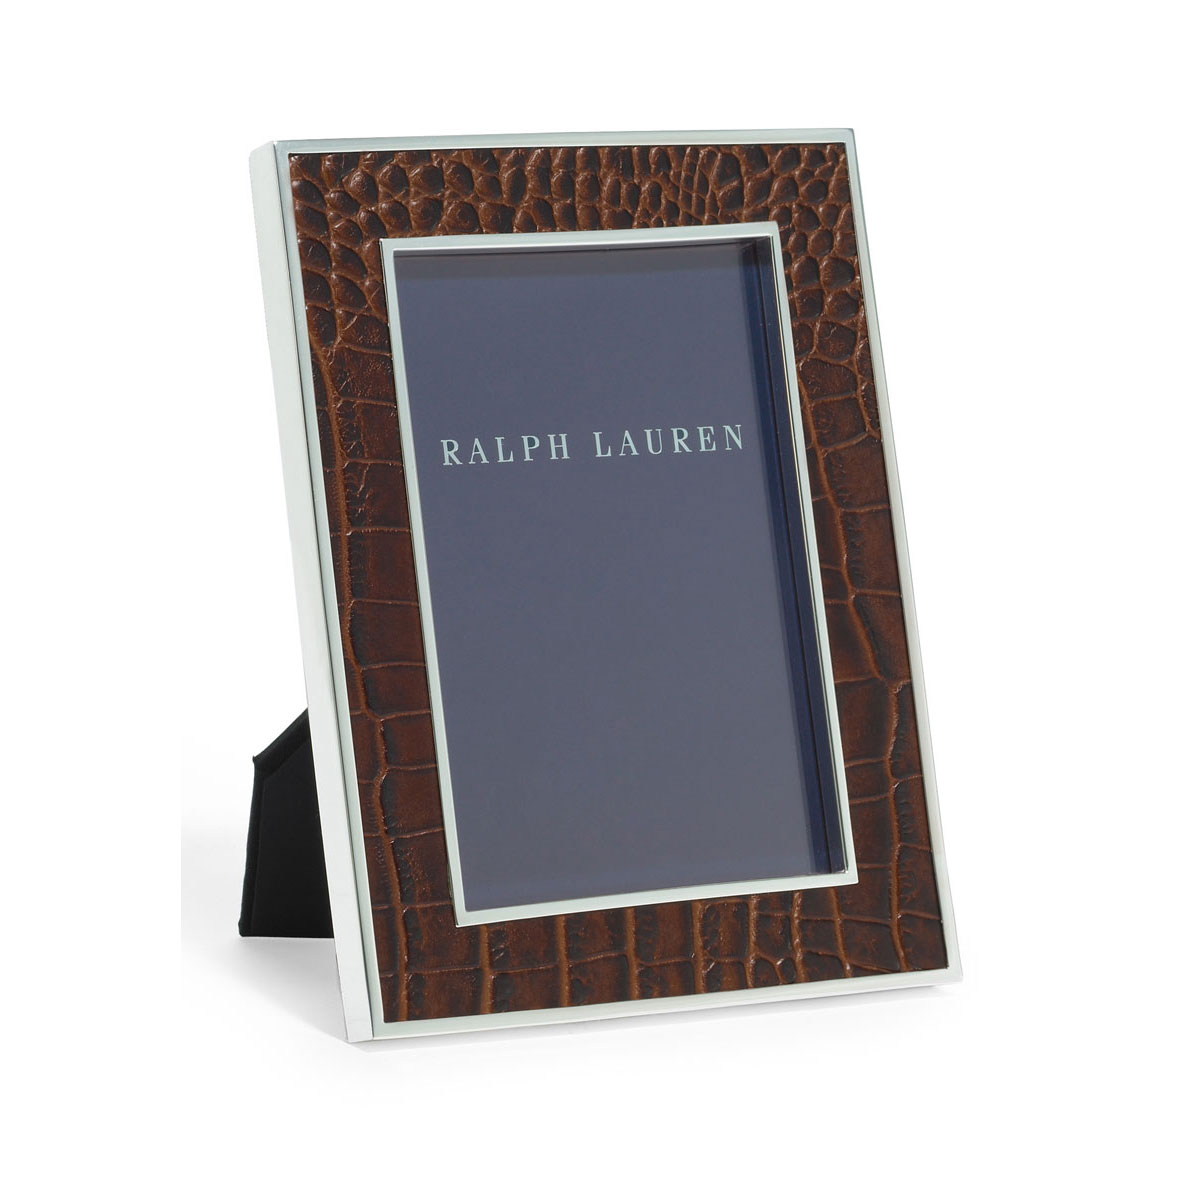 Ralph Lauren Chapman Chocolate Brown 5x7" Picture Frame